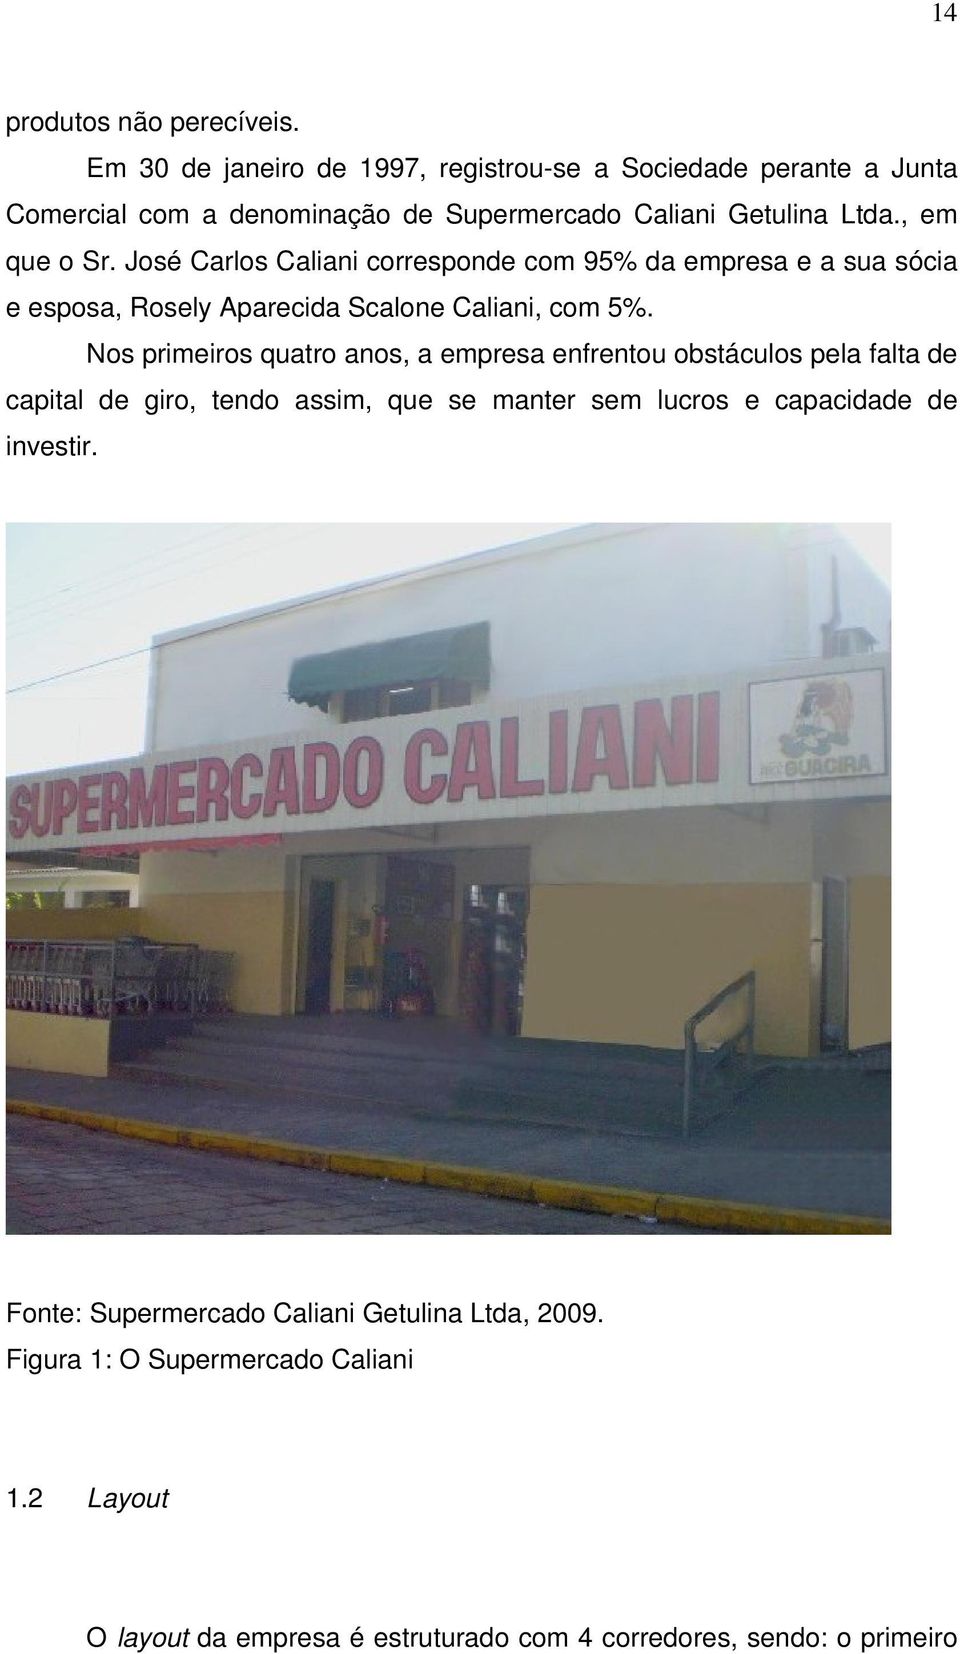 José Carlos Caliani corresponde com 95% da empresa e a sua sócia e esposa, Rosely Aparecida Scalone Caliani, com 5%.